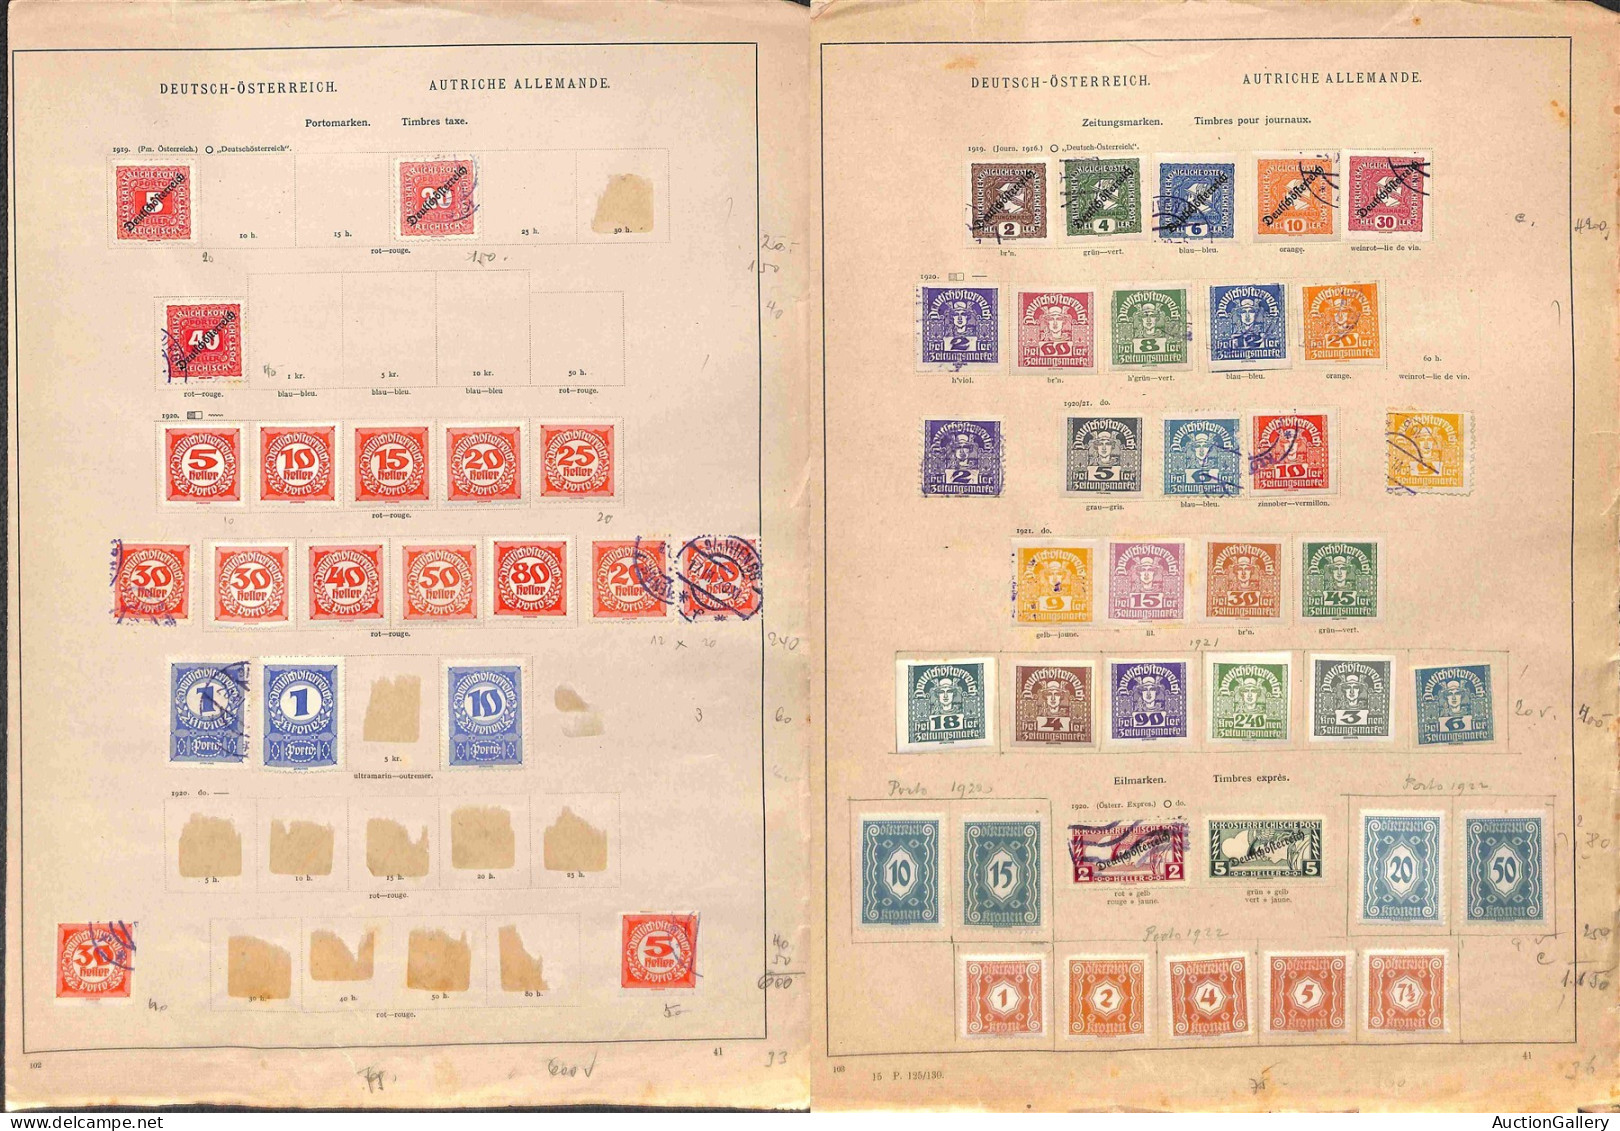 Lotti&Collezioni - AUSTRIA - 1890/1963 - Collezione di valori nuovi e usati del periodo in pagine d'album e fogli artigi